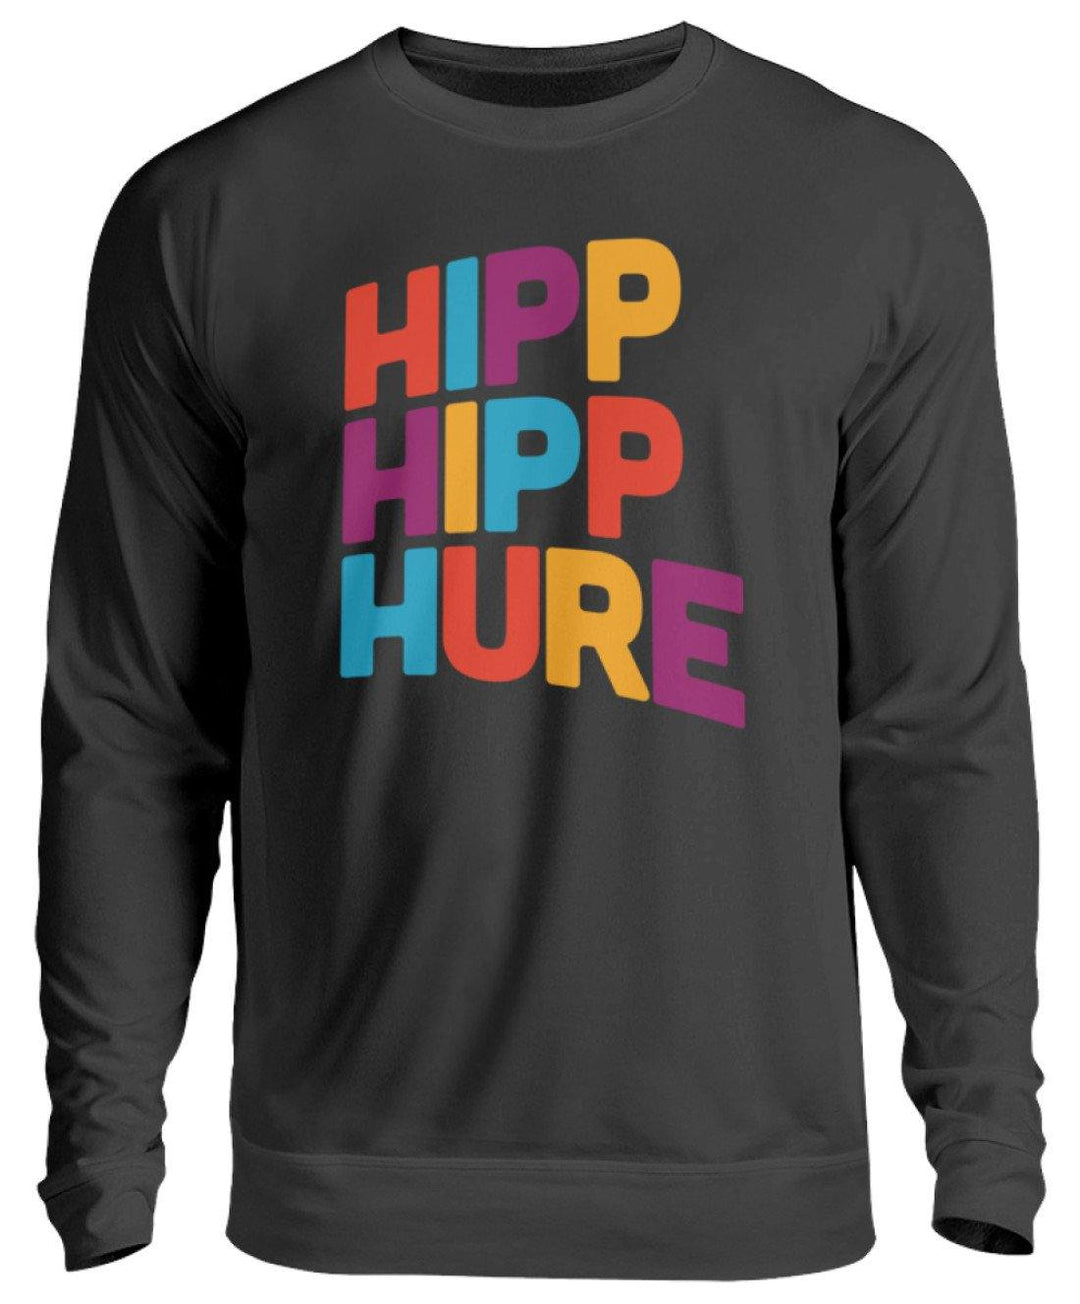 HIPP HIPP HURE- WORDS ON SHIRTS  - Unisex Pullover - Words on Shirts Sag es mit dem Mittelfinger Shirts Hoodies Sweatshirt Taschen Gymsack Spruch Sprüche Statement